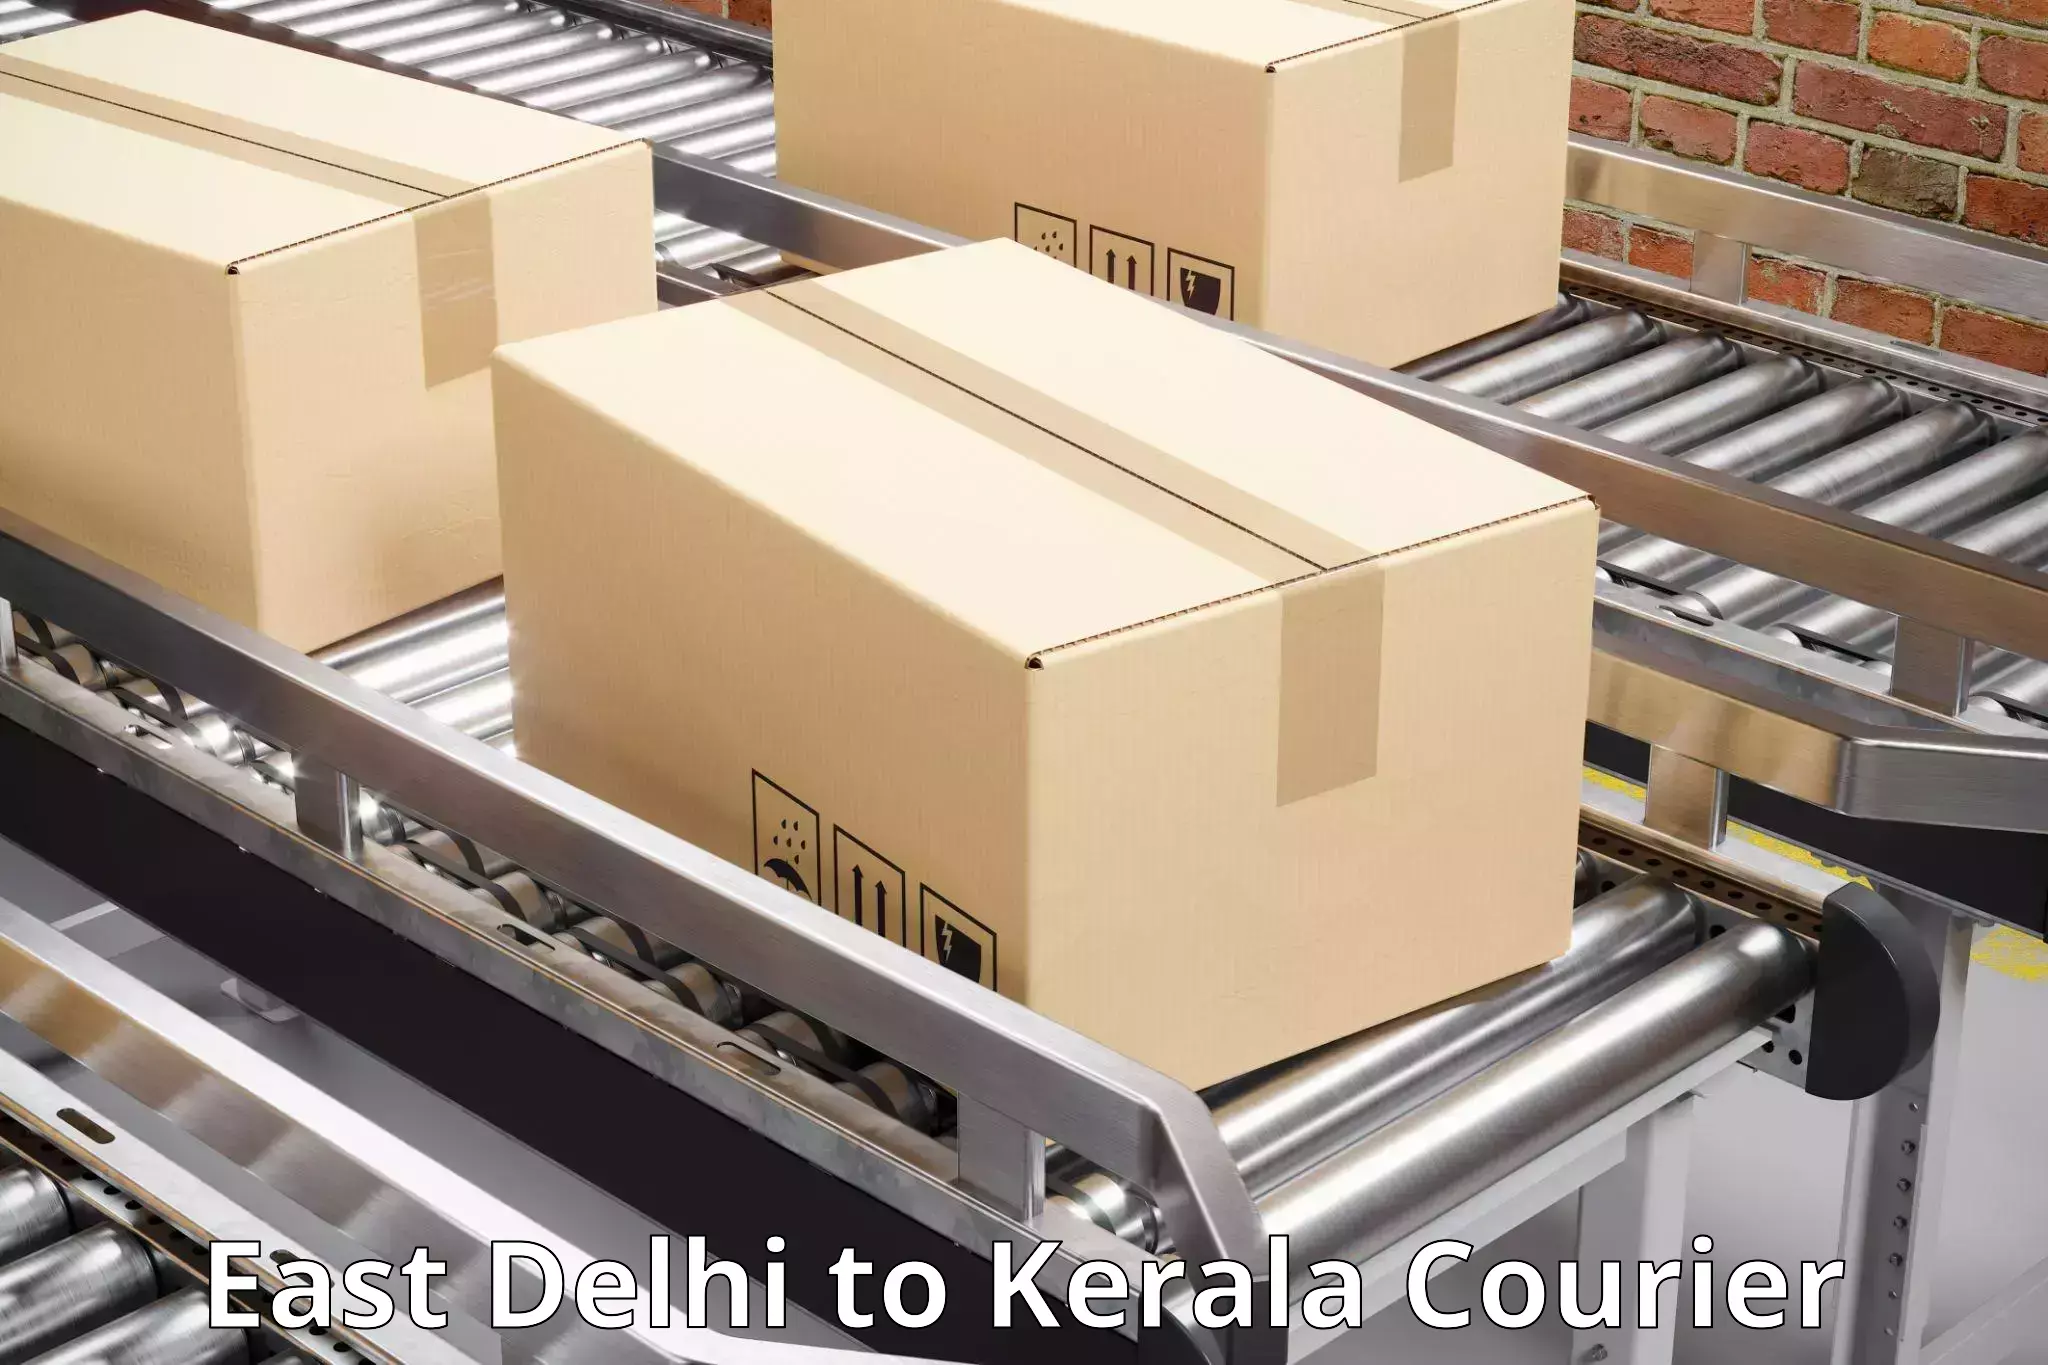 Logistics efficiency in East Delhi to Ernakulam